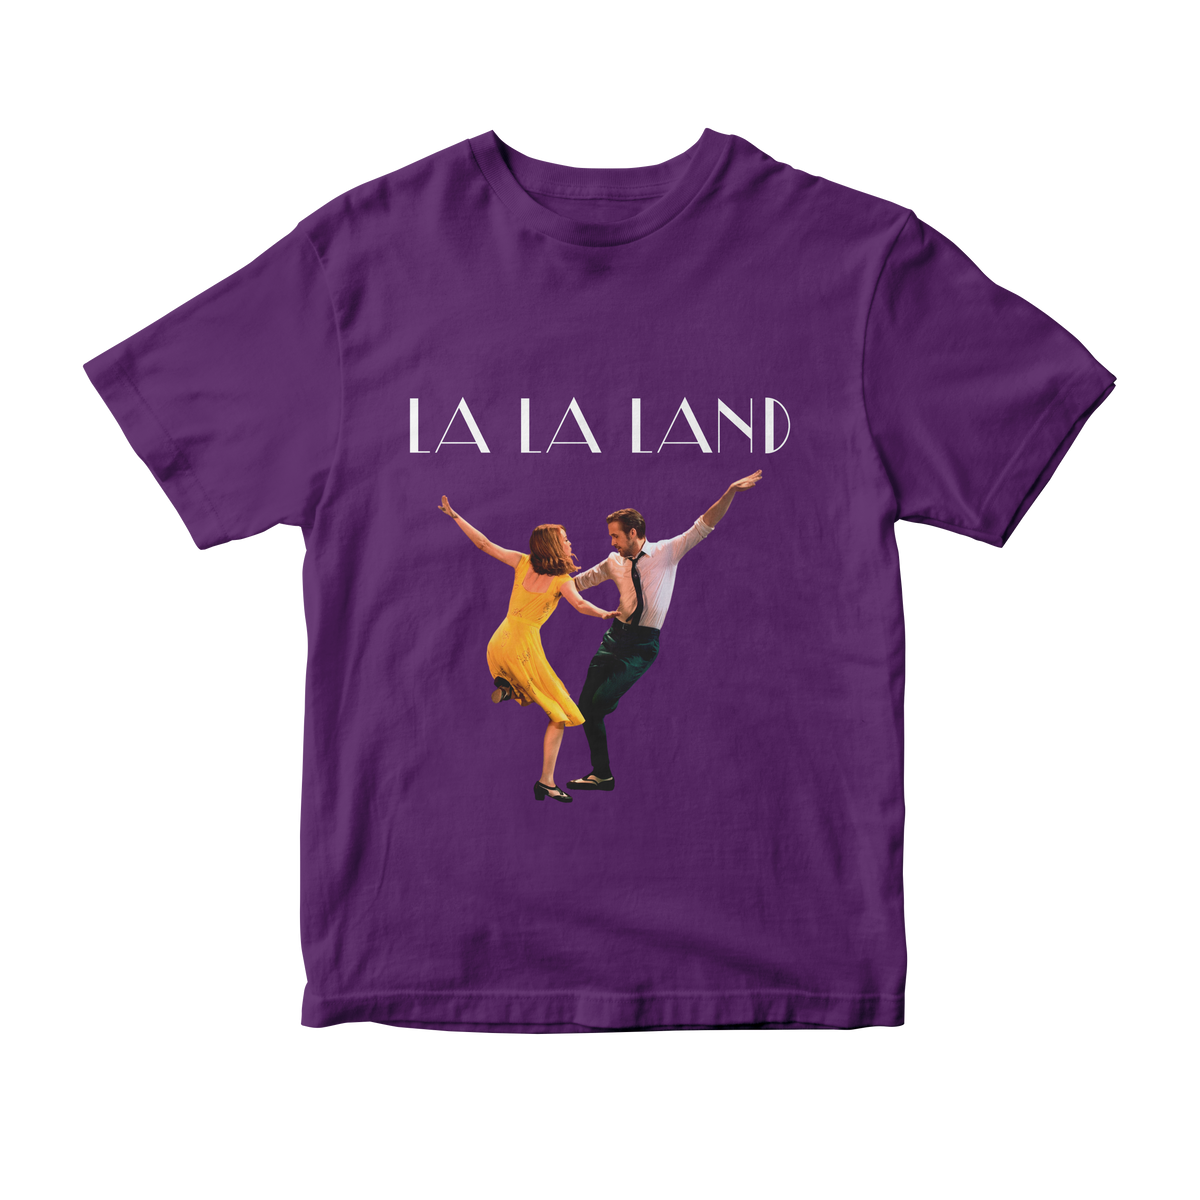 Nome do produto: Camiseta La La Land v1